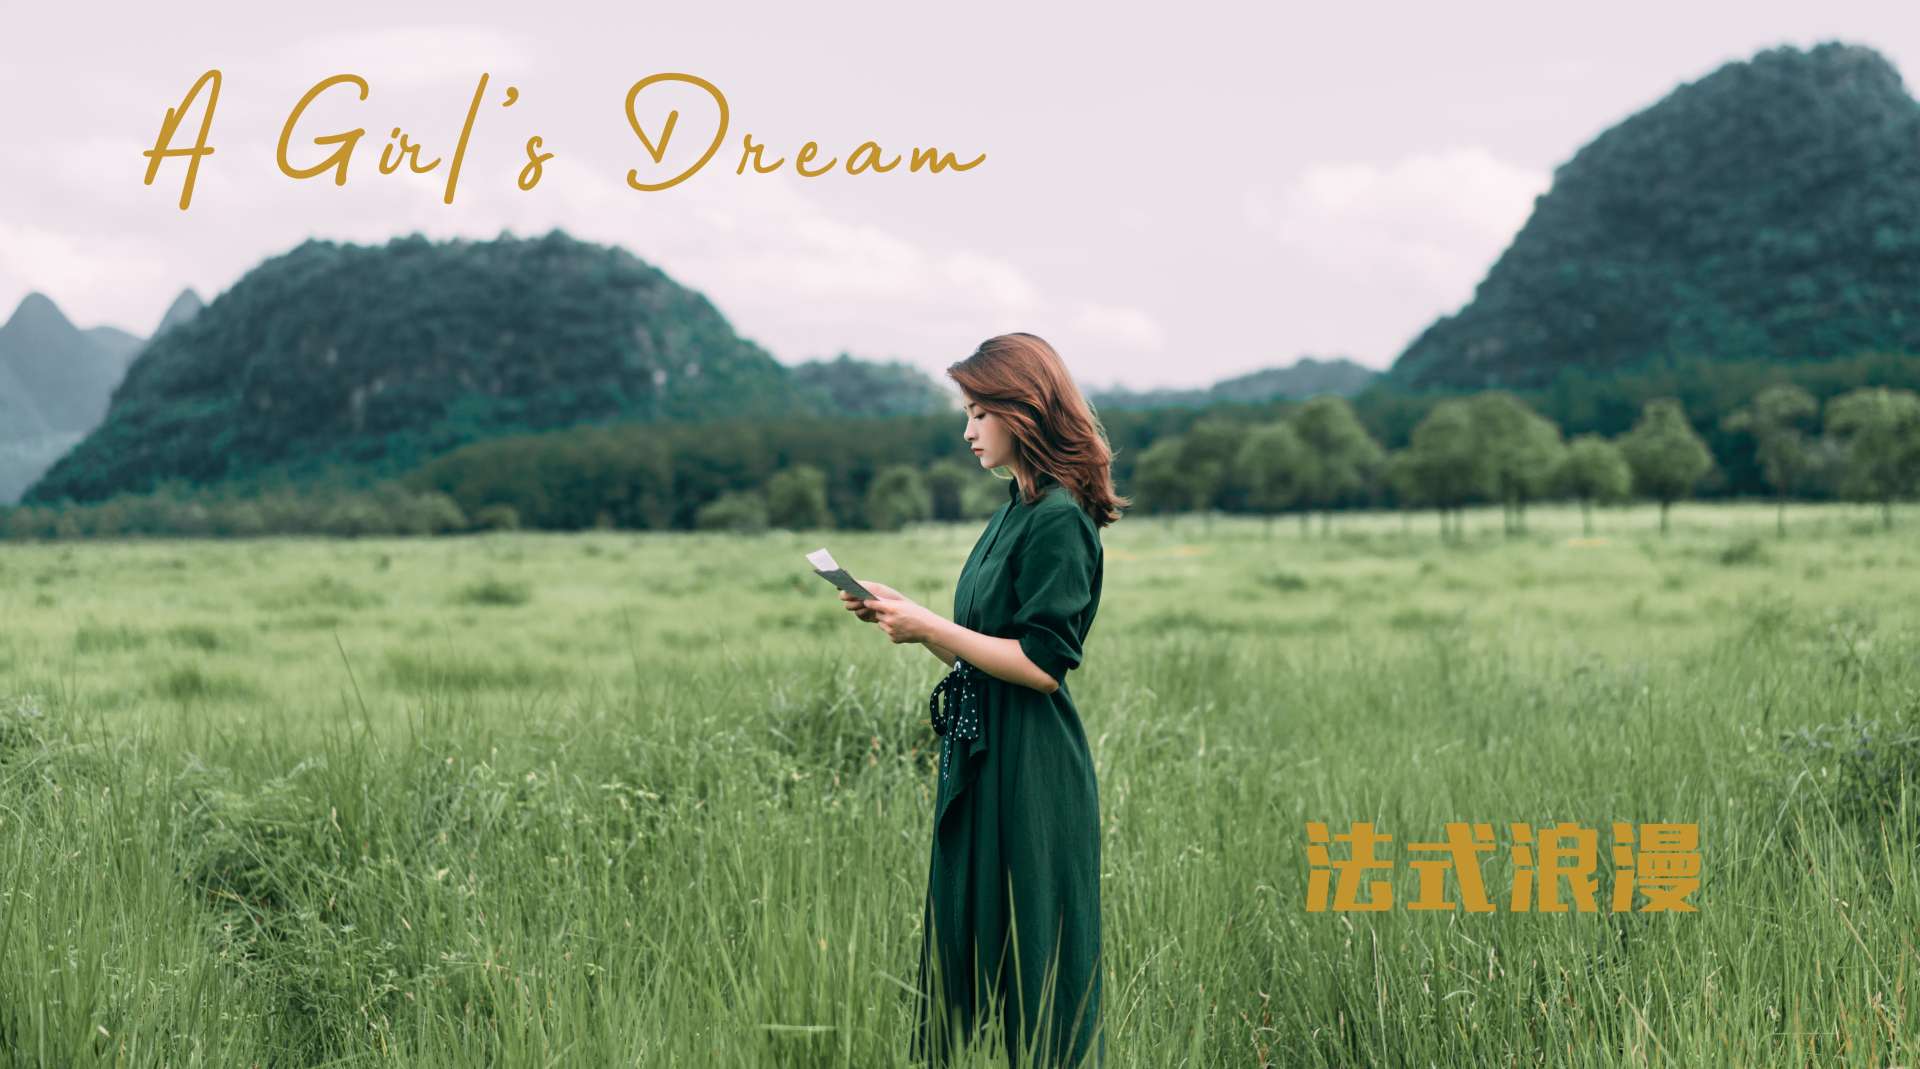 法 式 浪 漫 | A Girl's Dream